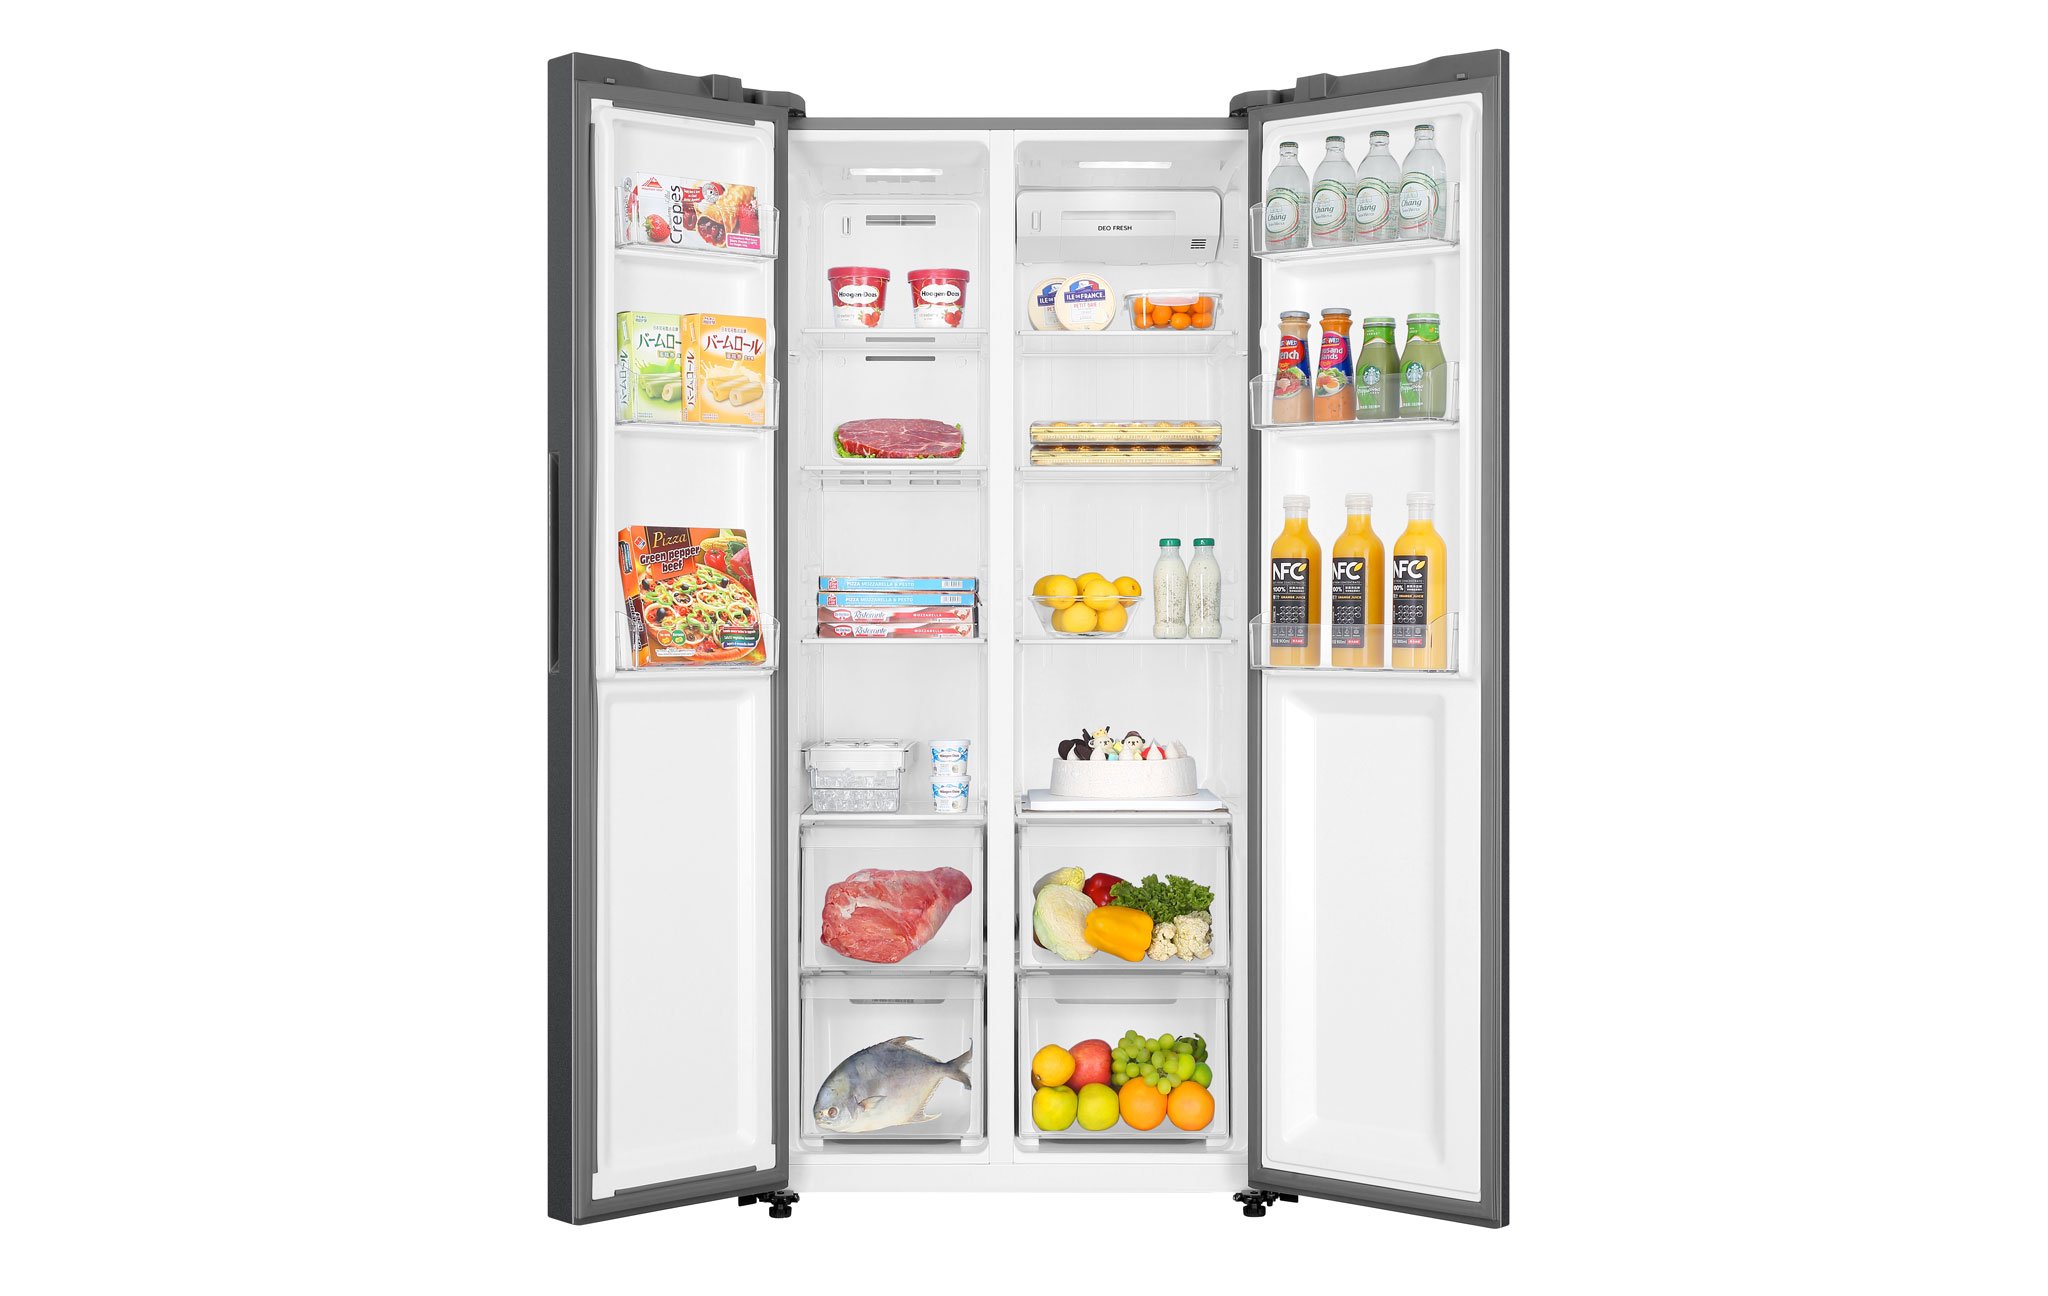 Thời gian tối đa để bảo quản thực phẩm trong tủ lạnh đúng cách, tránh nhiễm khuẩn trong mùa dịch